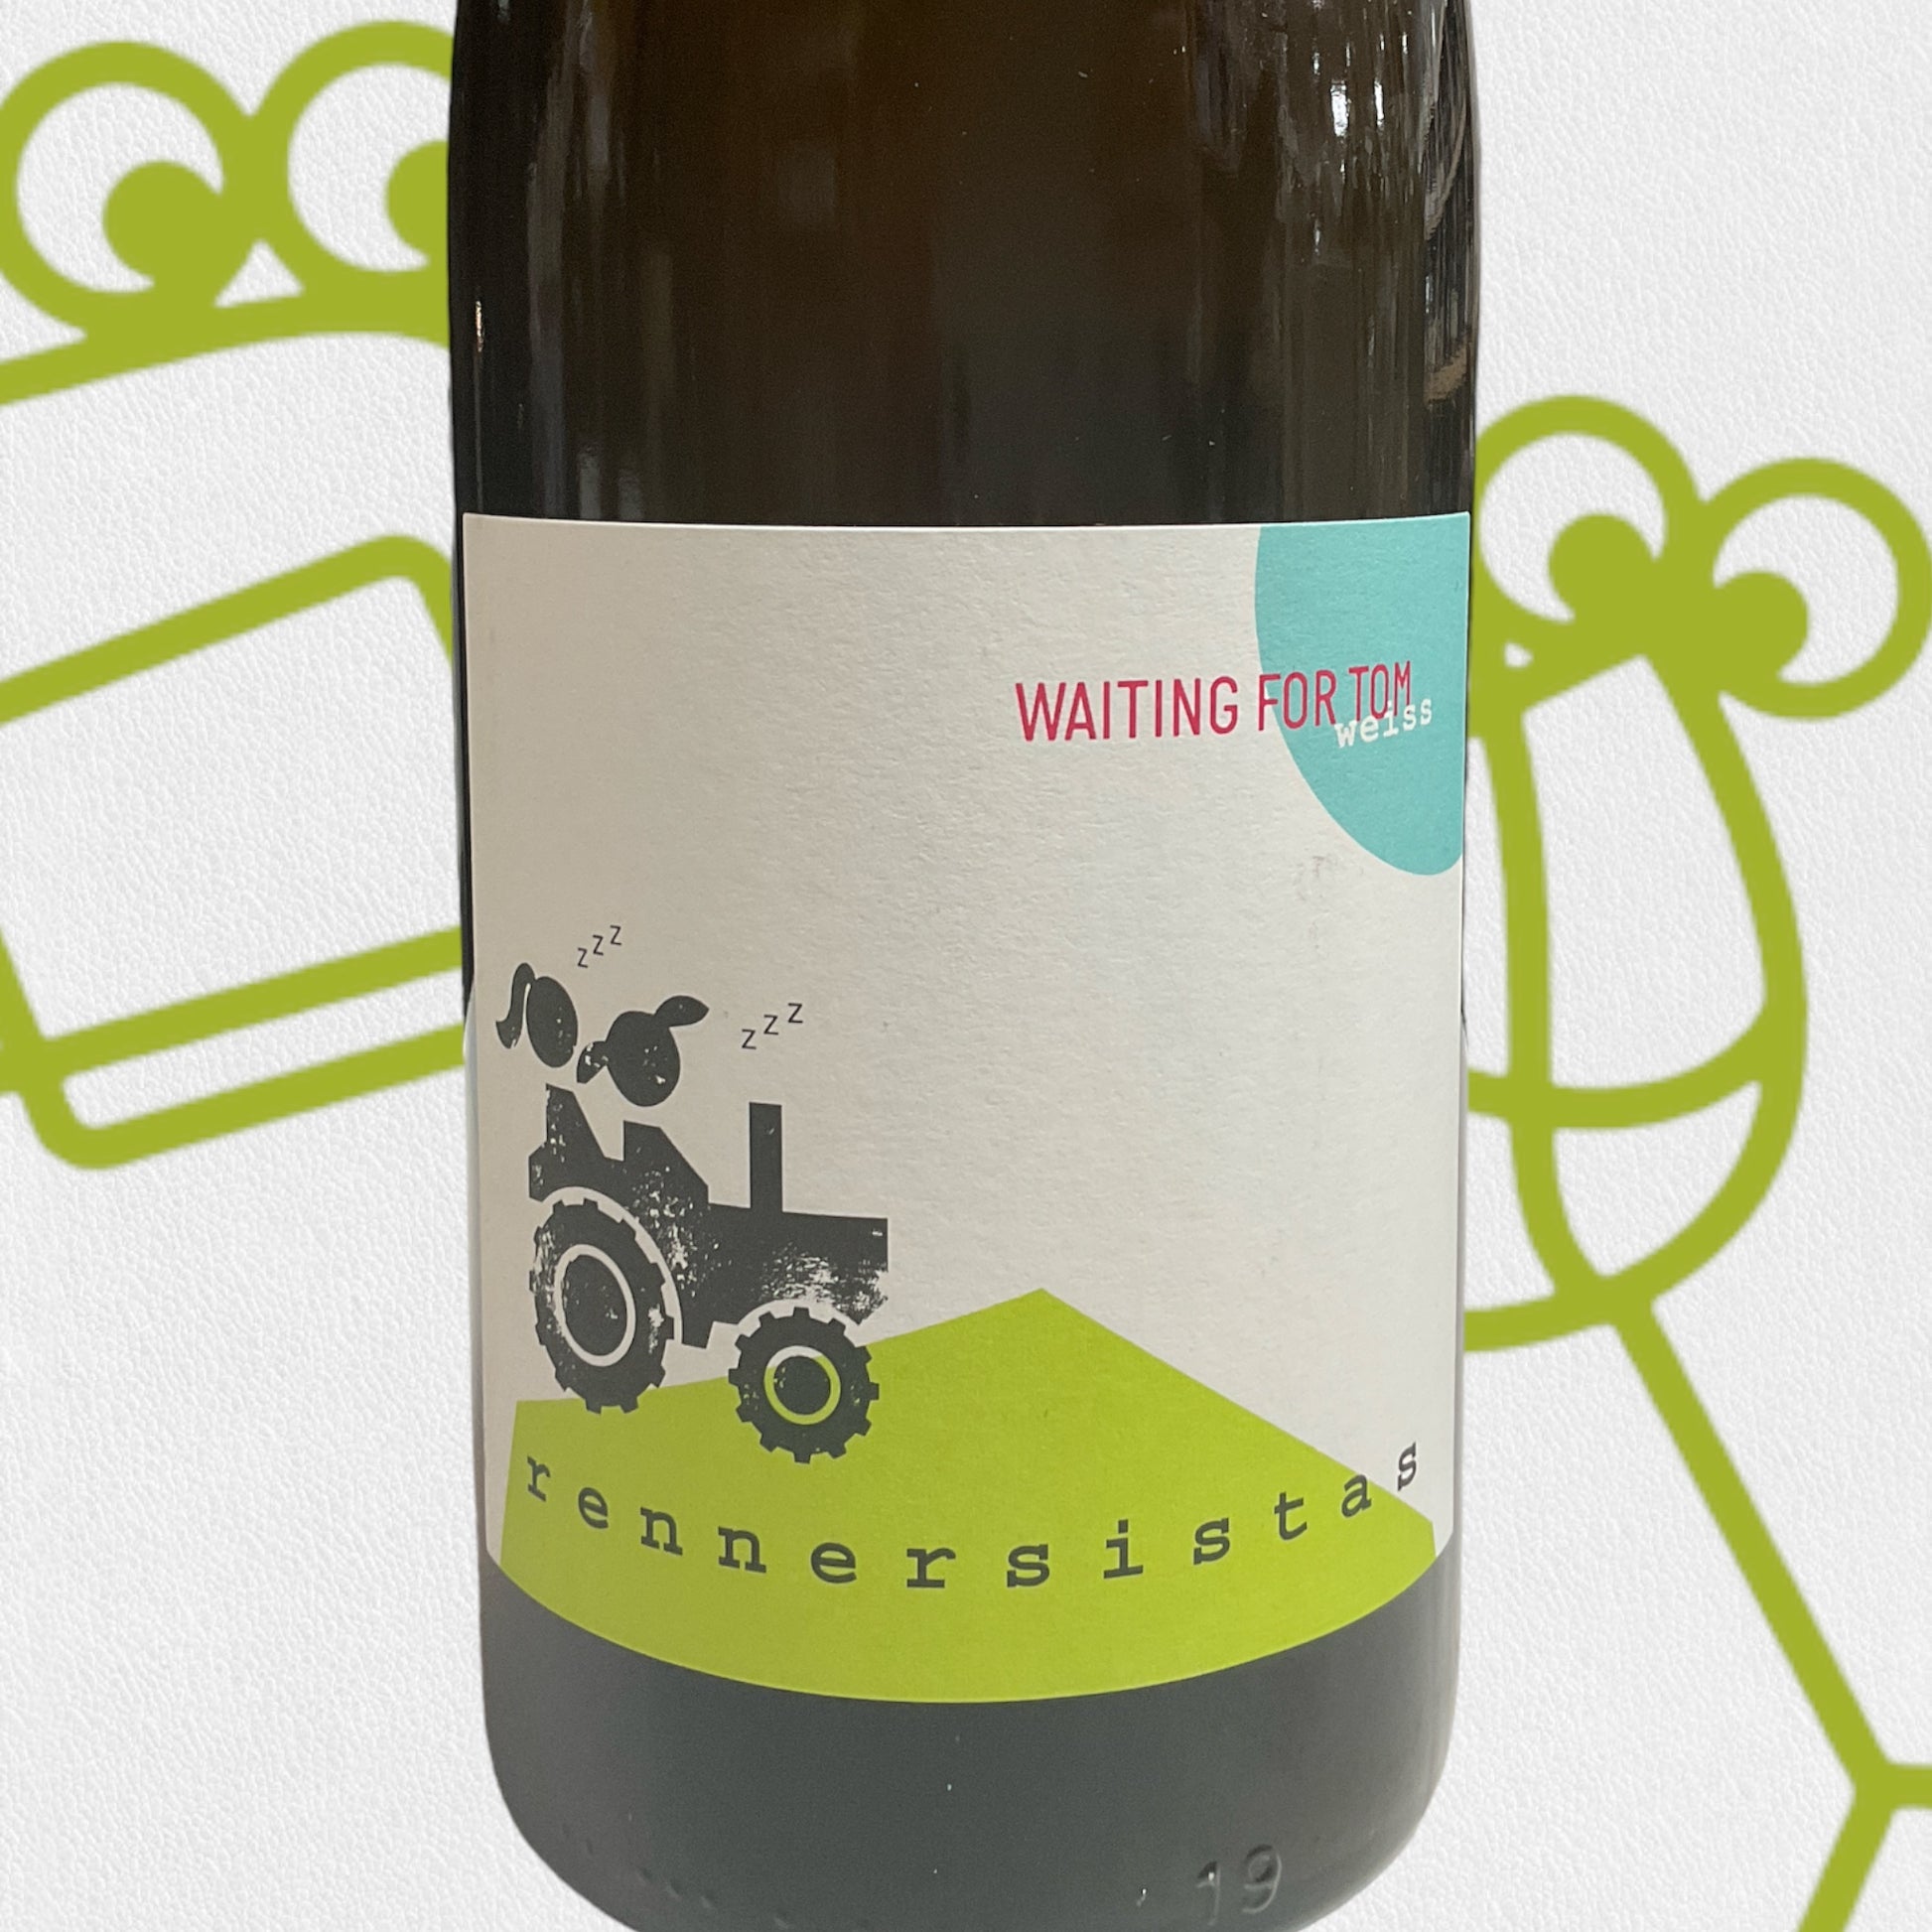 Rennersistas 'Waiting For Tom' Weiss 2019 Burgenland, Austria - Williston Park Wines & Spirits